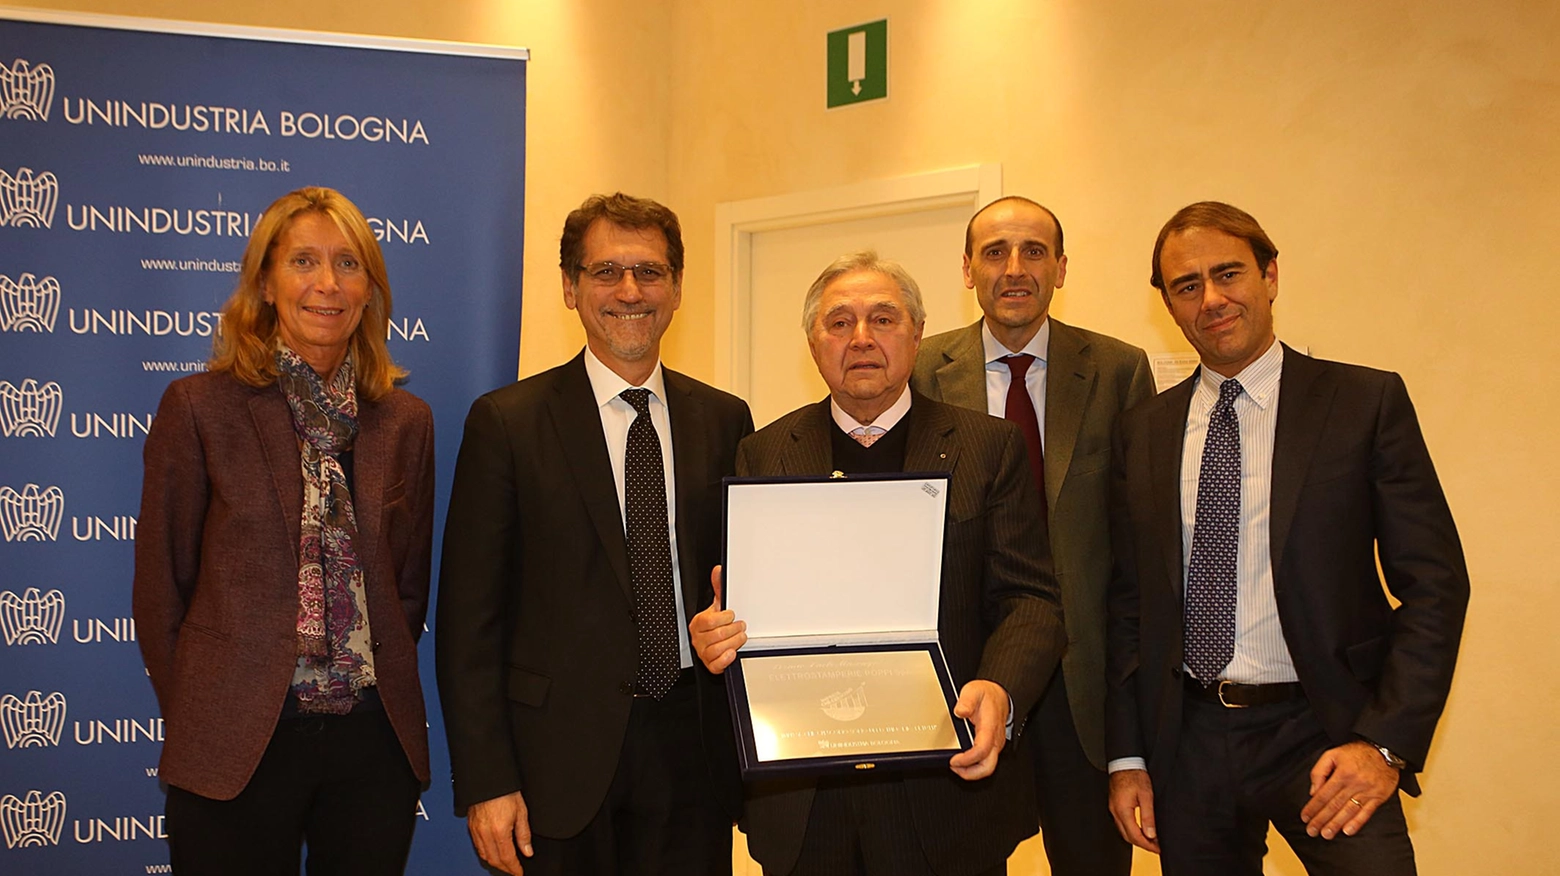 Elena Zacchiroli, Virginio Merola, il vincitore Ugo Poppi, Alberto Vacchi e Andrea Cangini